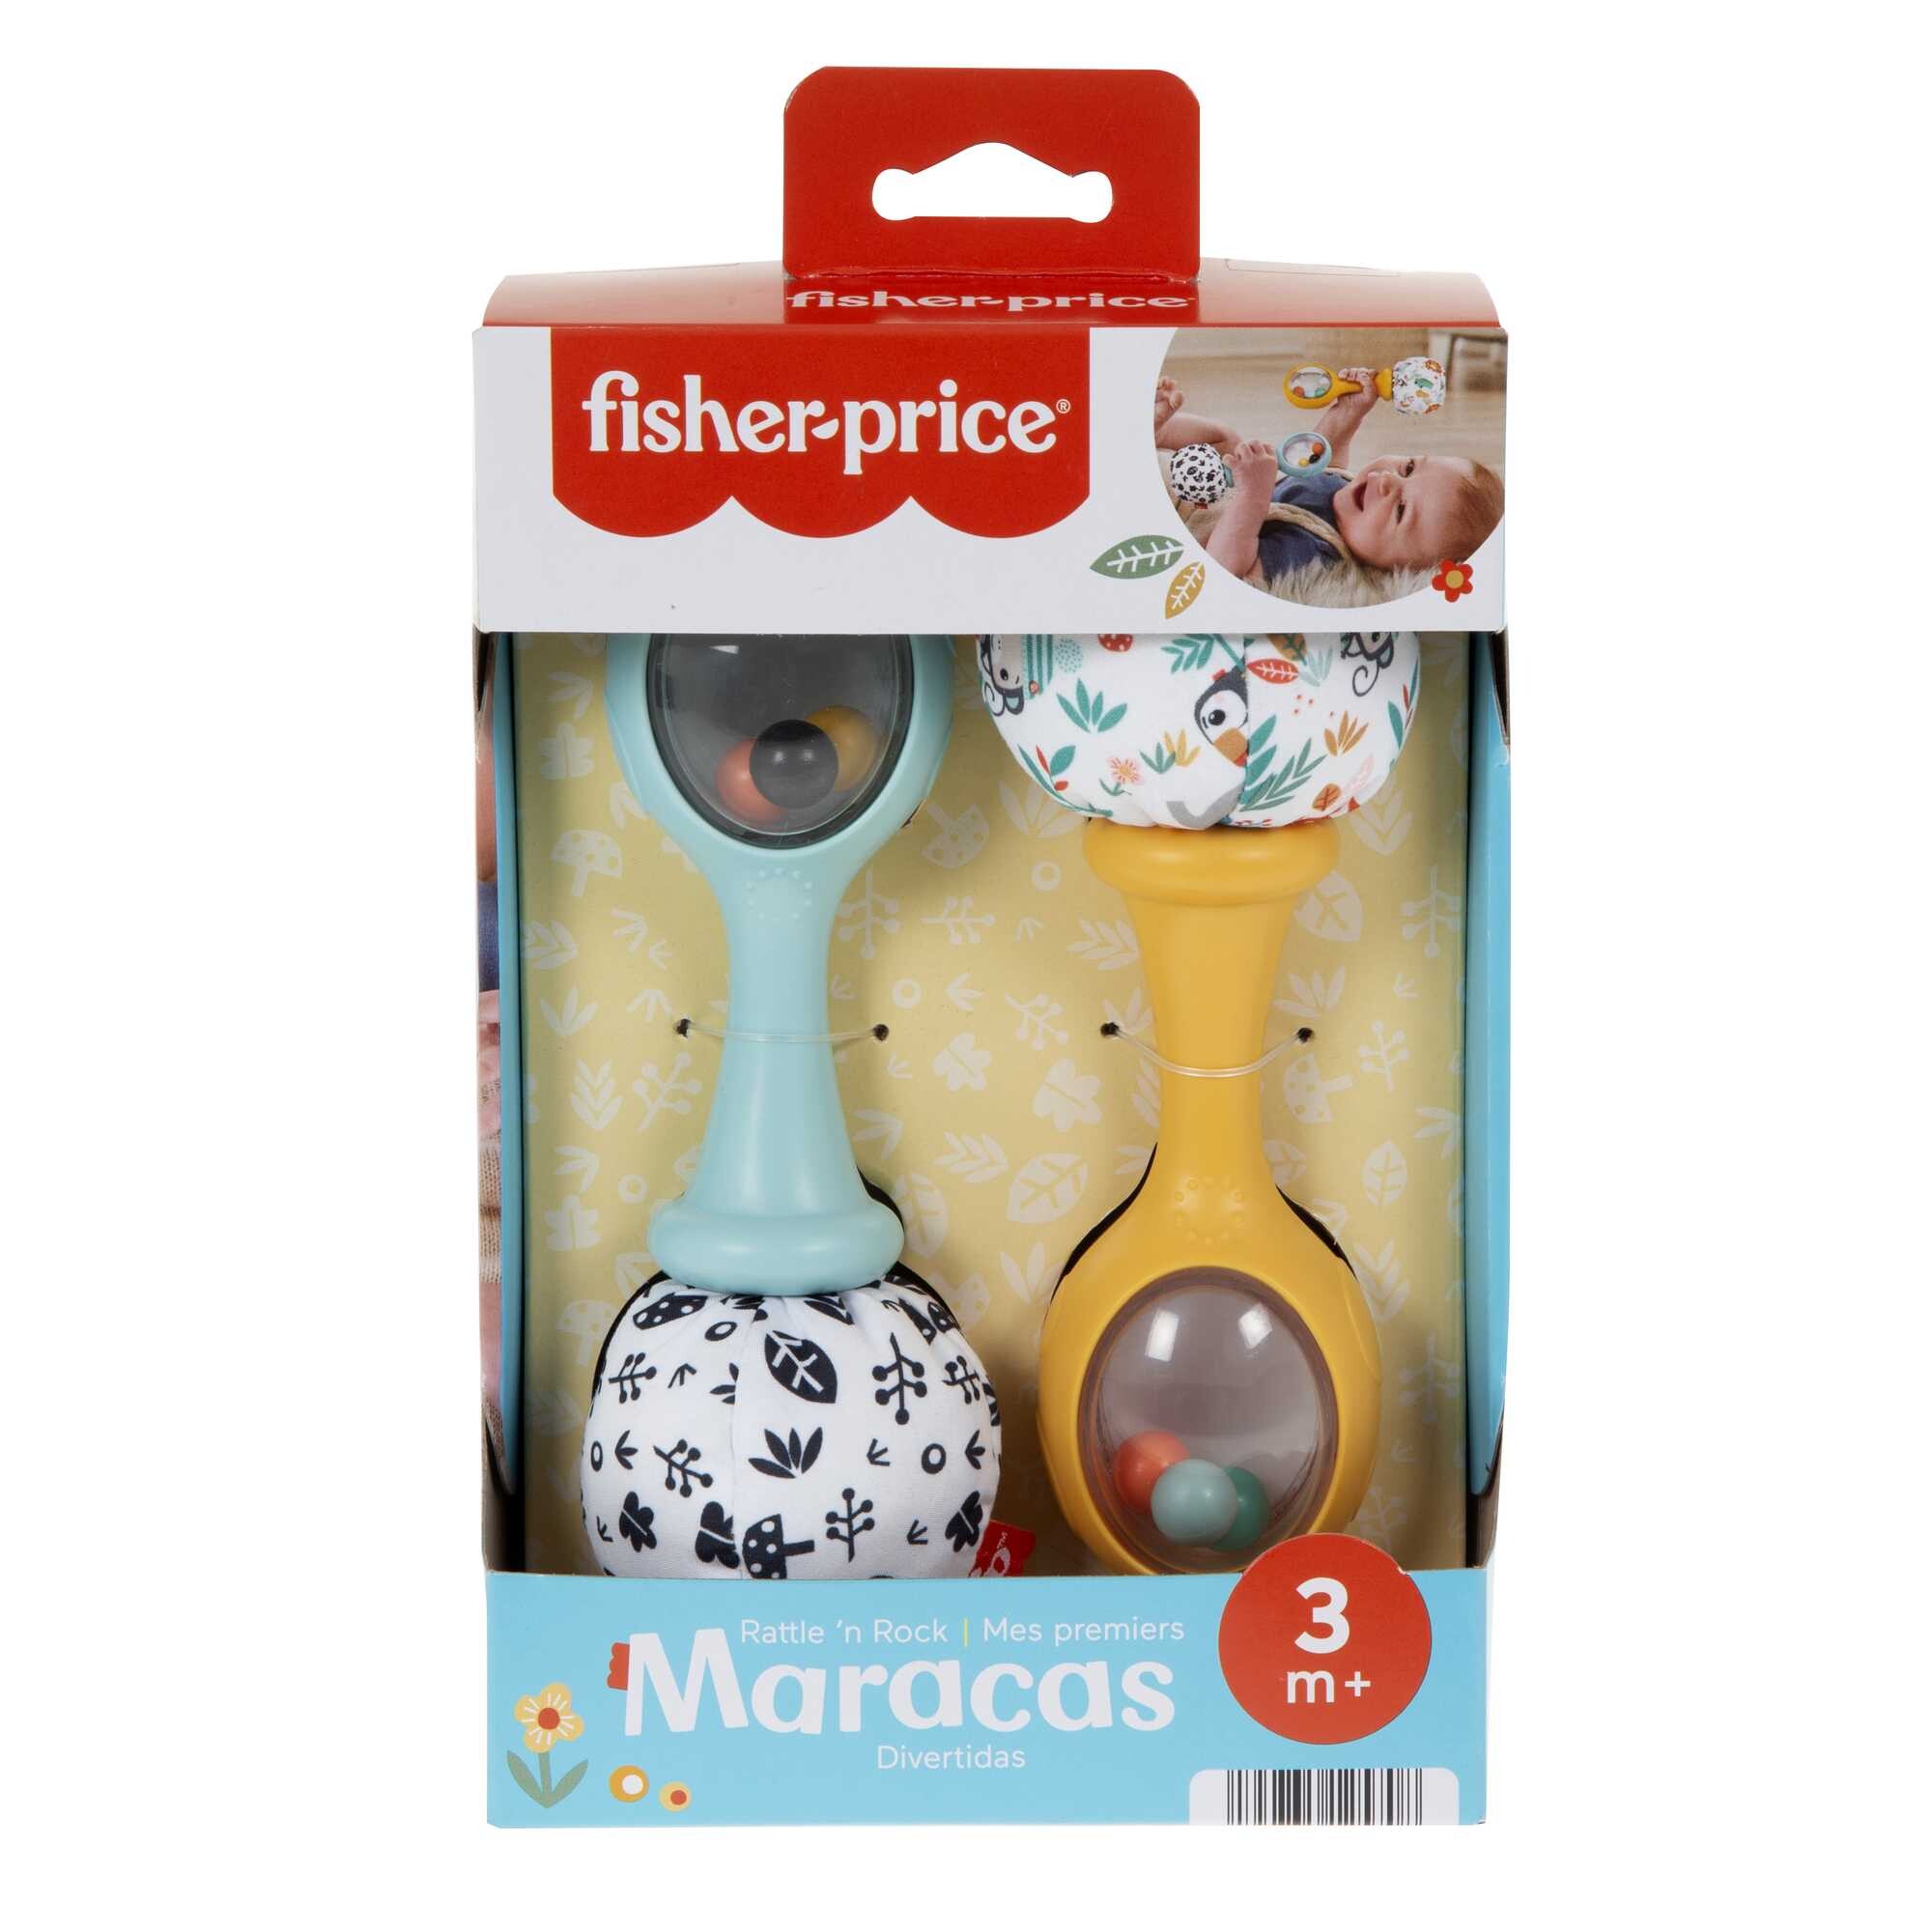 Fisher-price - maracas, set di 2 maracas sonaglino con motivi ad alto contrasto e suoni divertenti - FISHER-PRICE